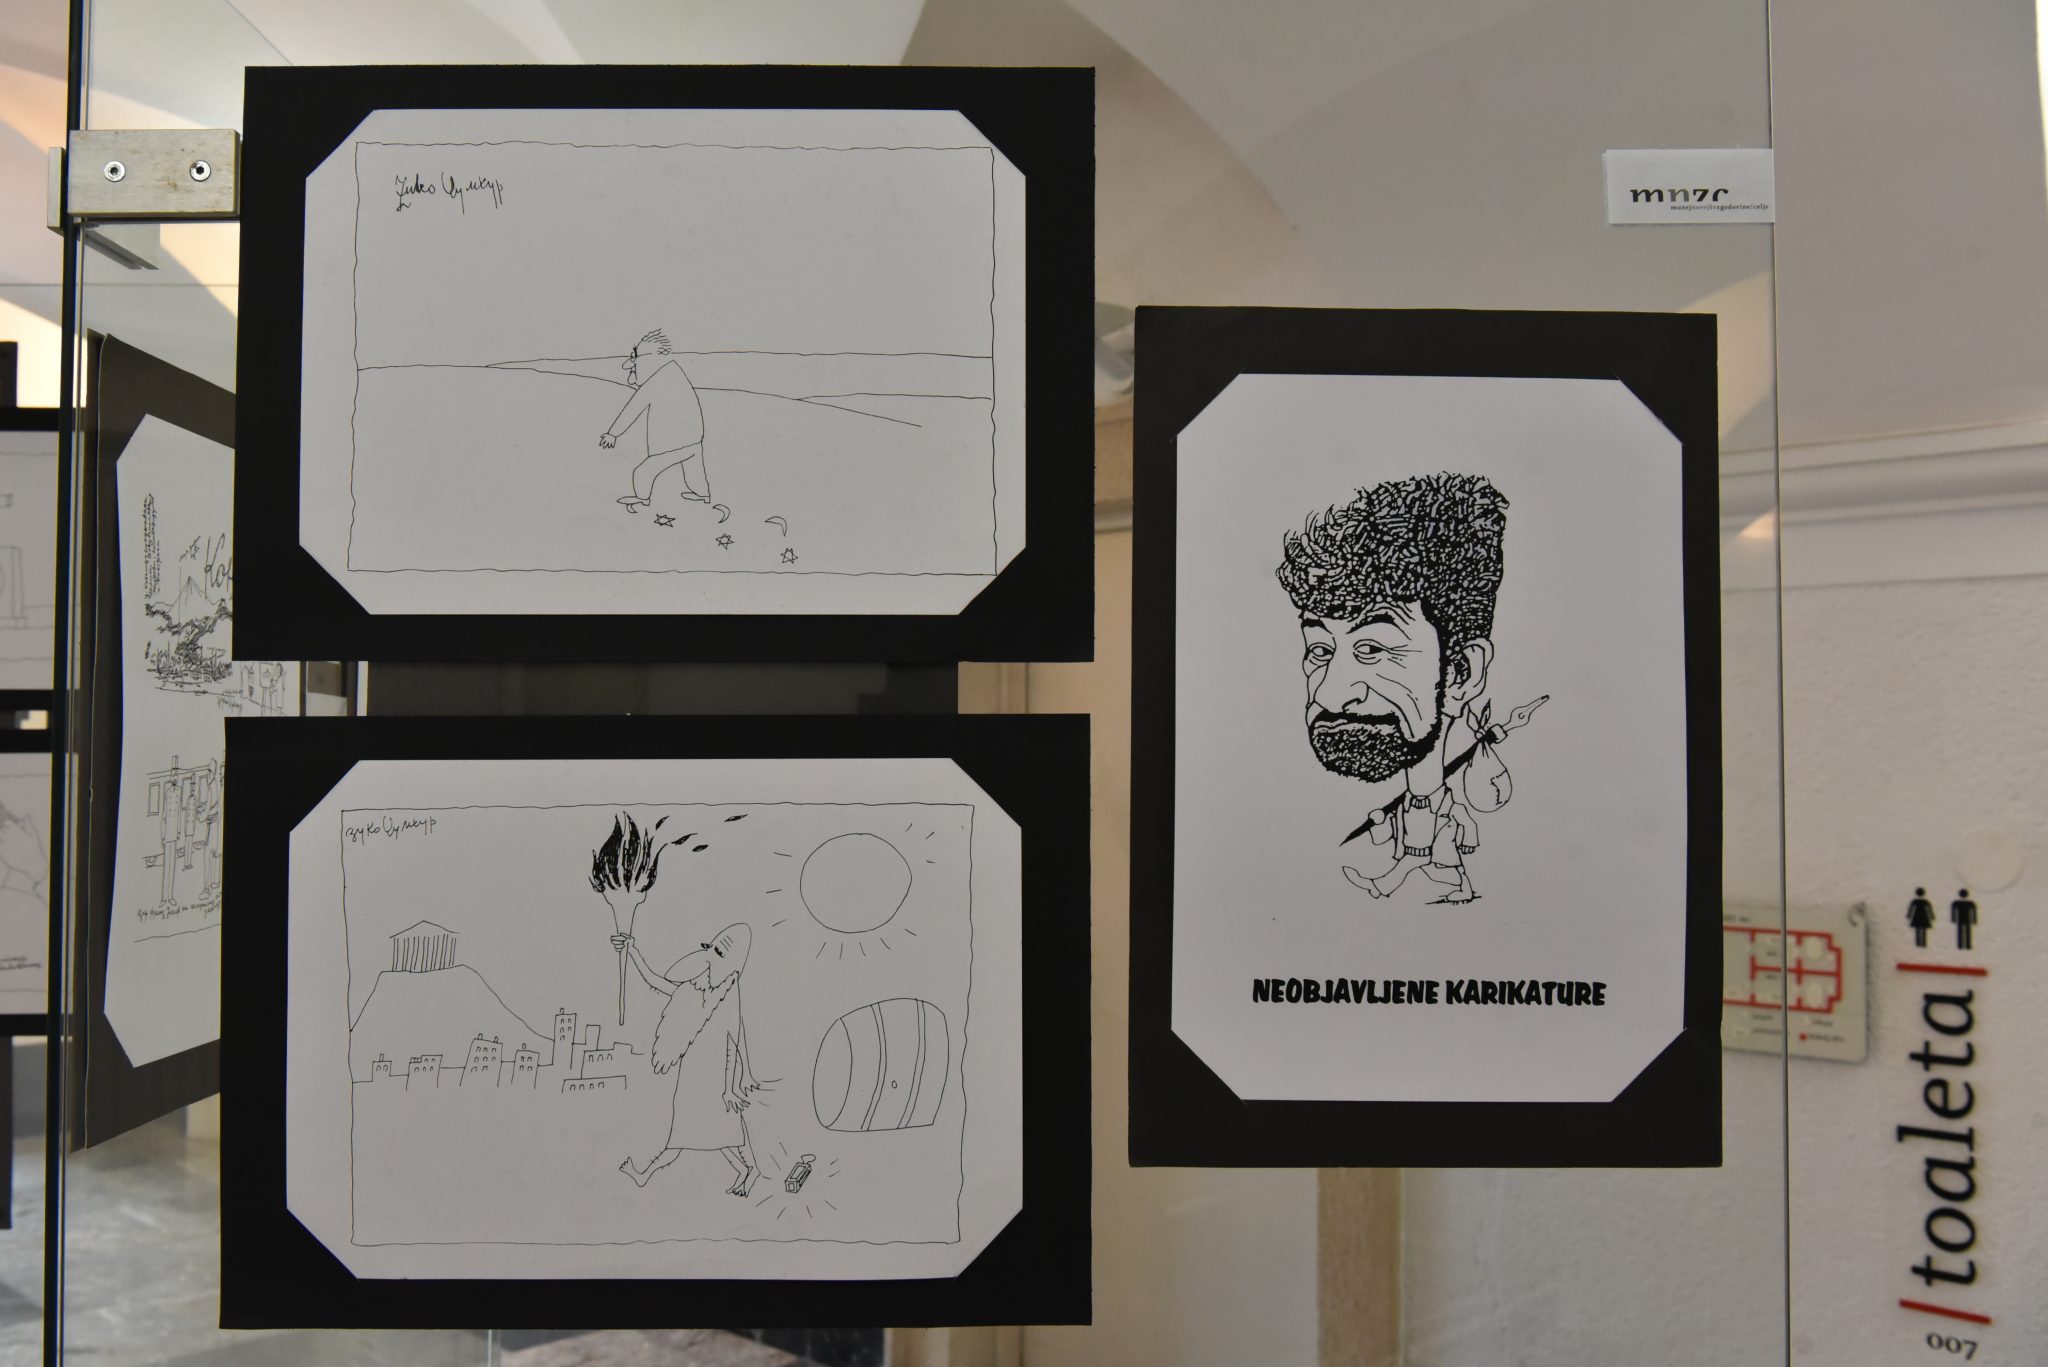 Vabljeni na ogled gostujoče razstave Zukove karikature